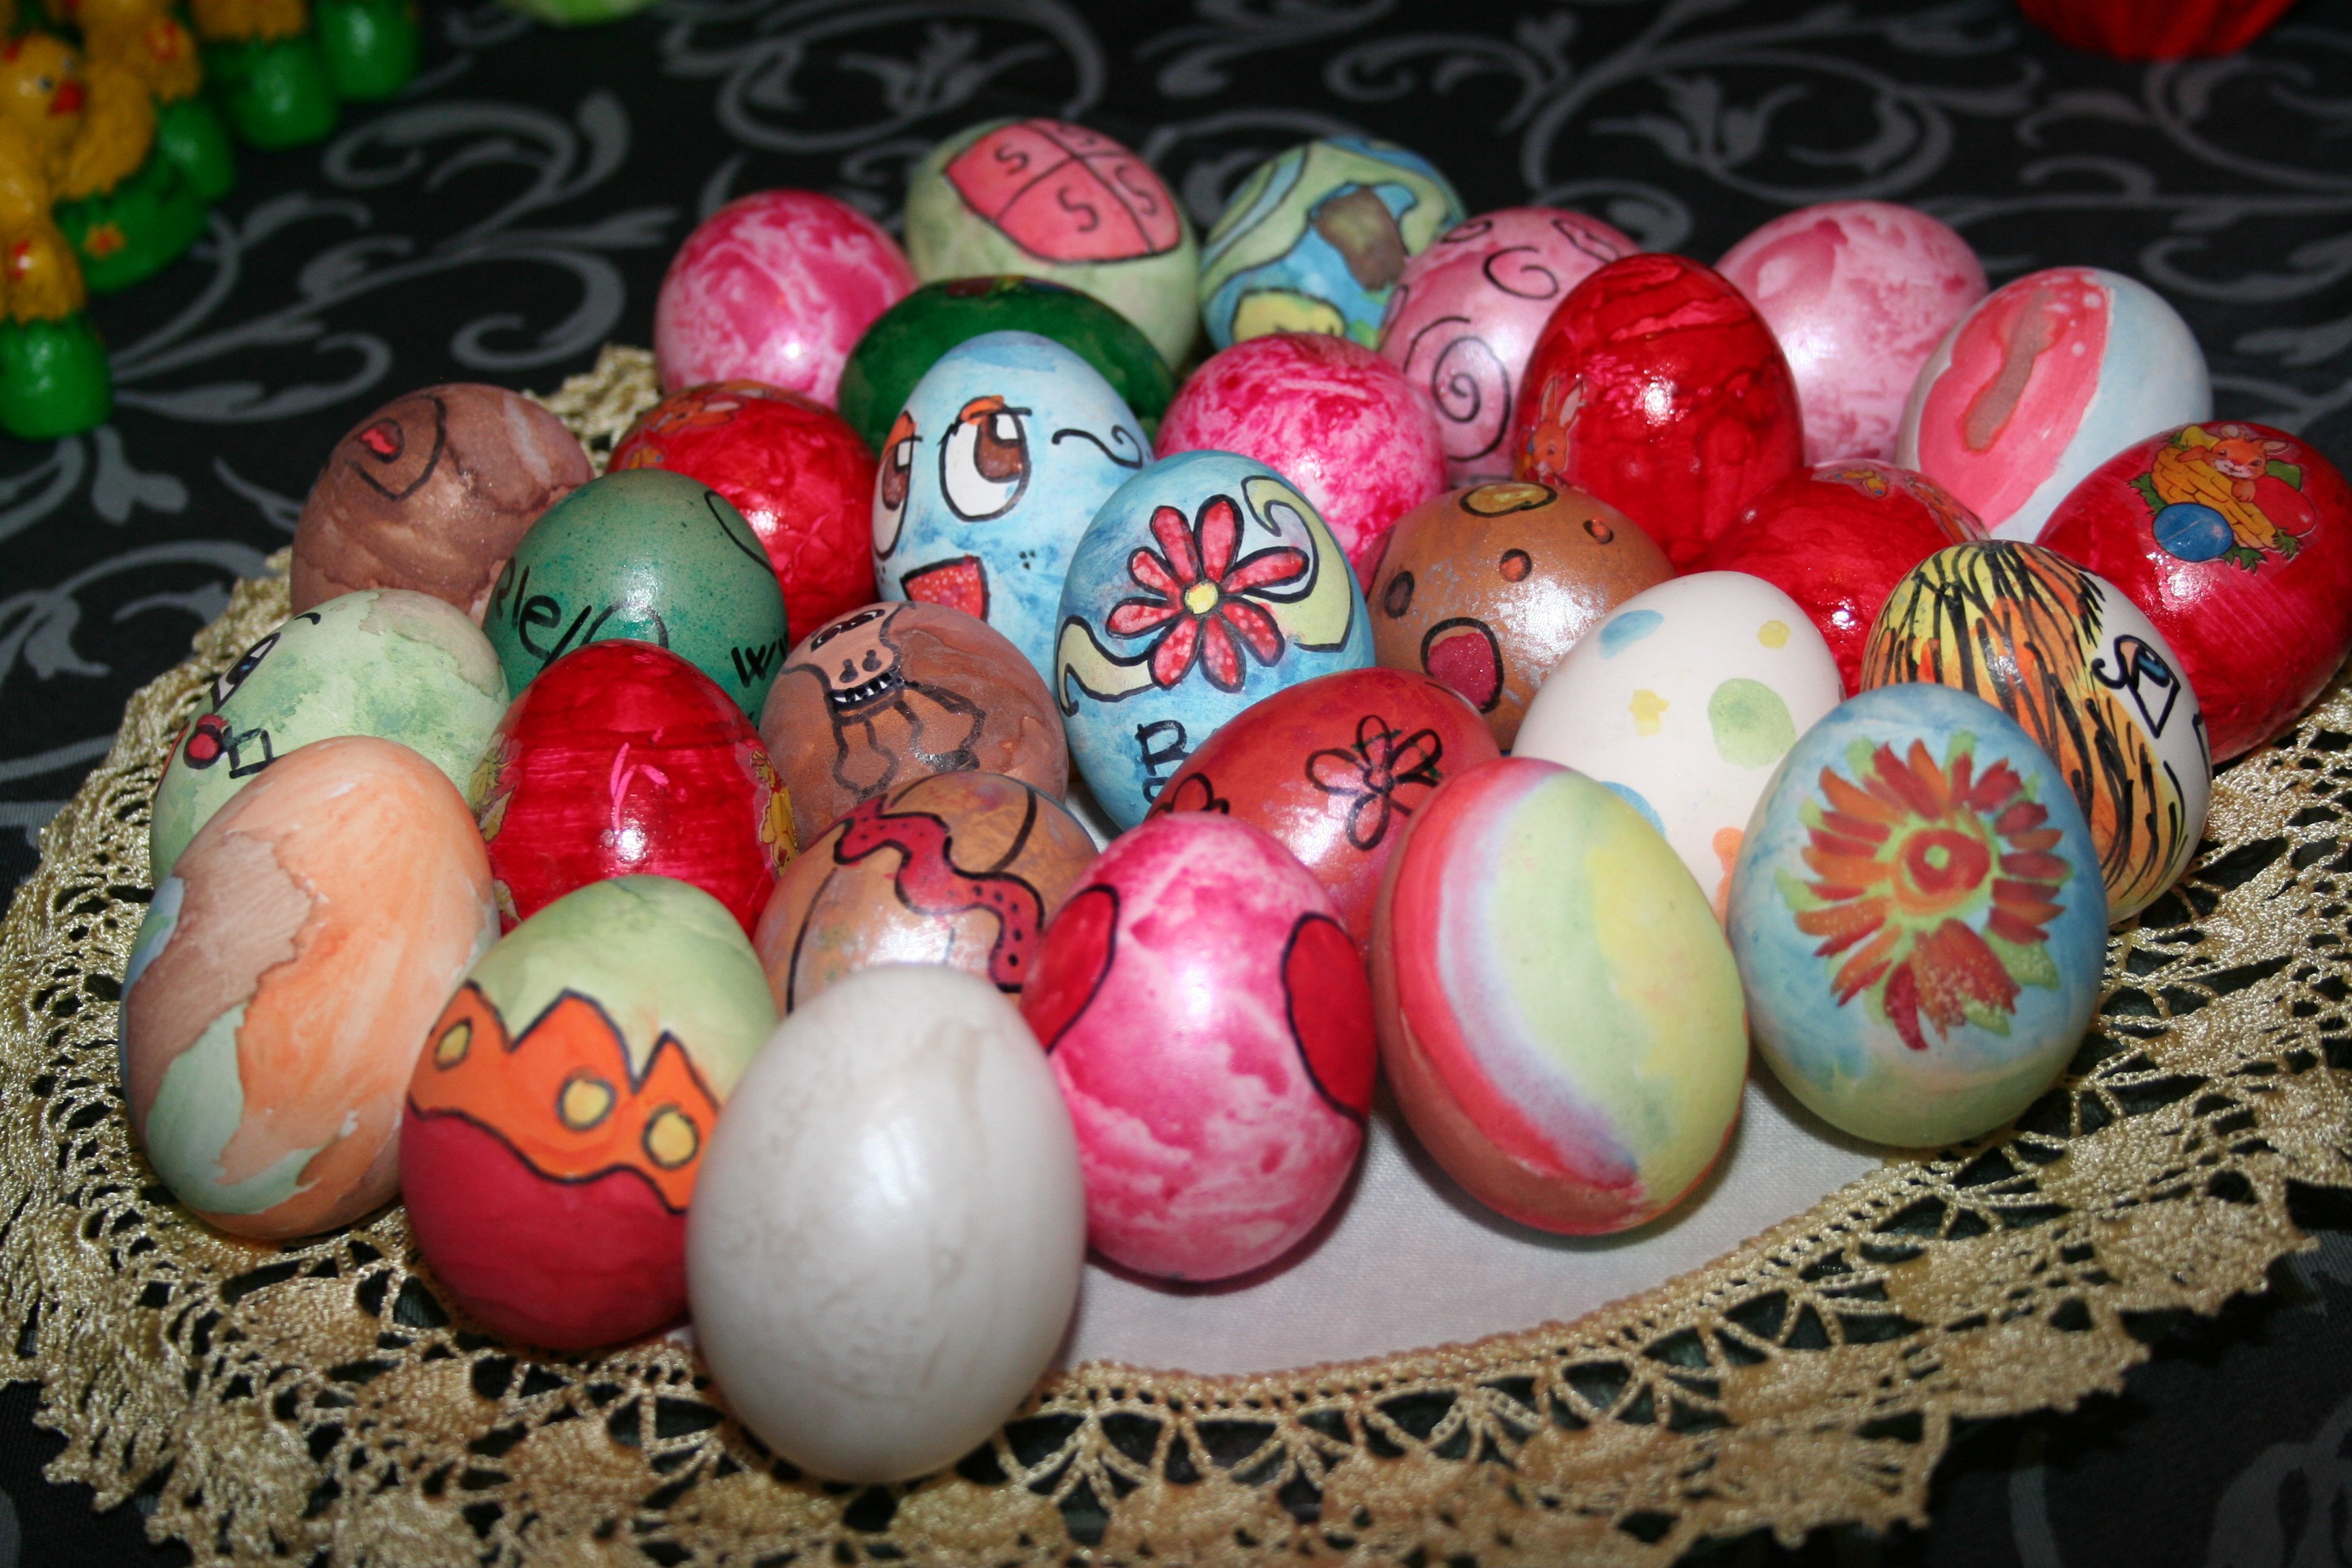 Redescubra a tradição de pintar ovos na pascoa